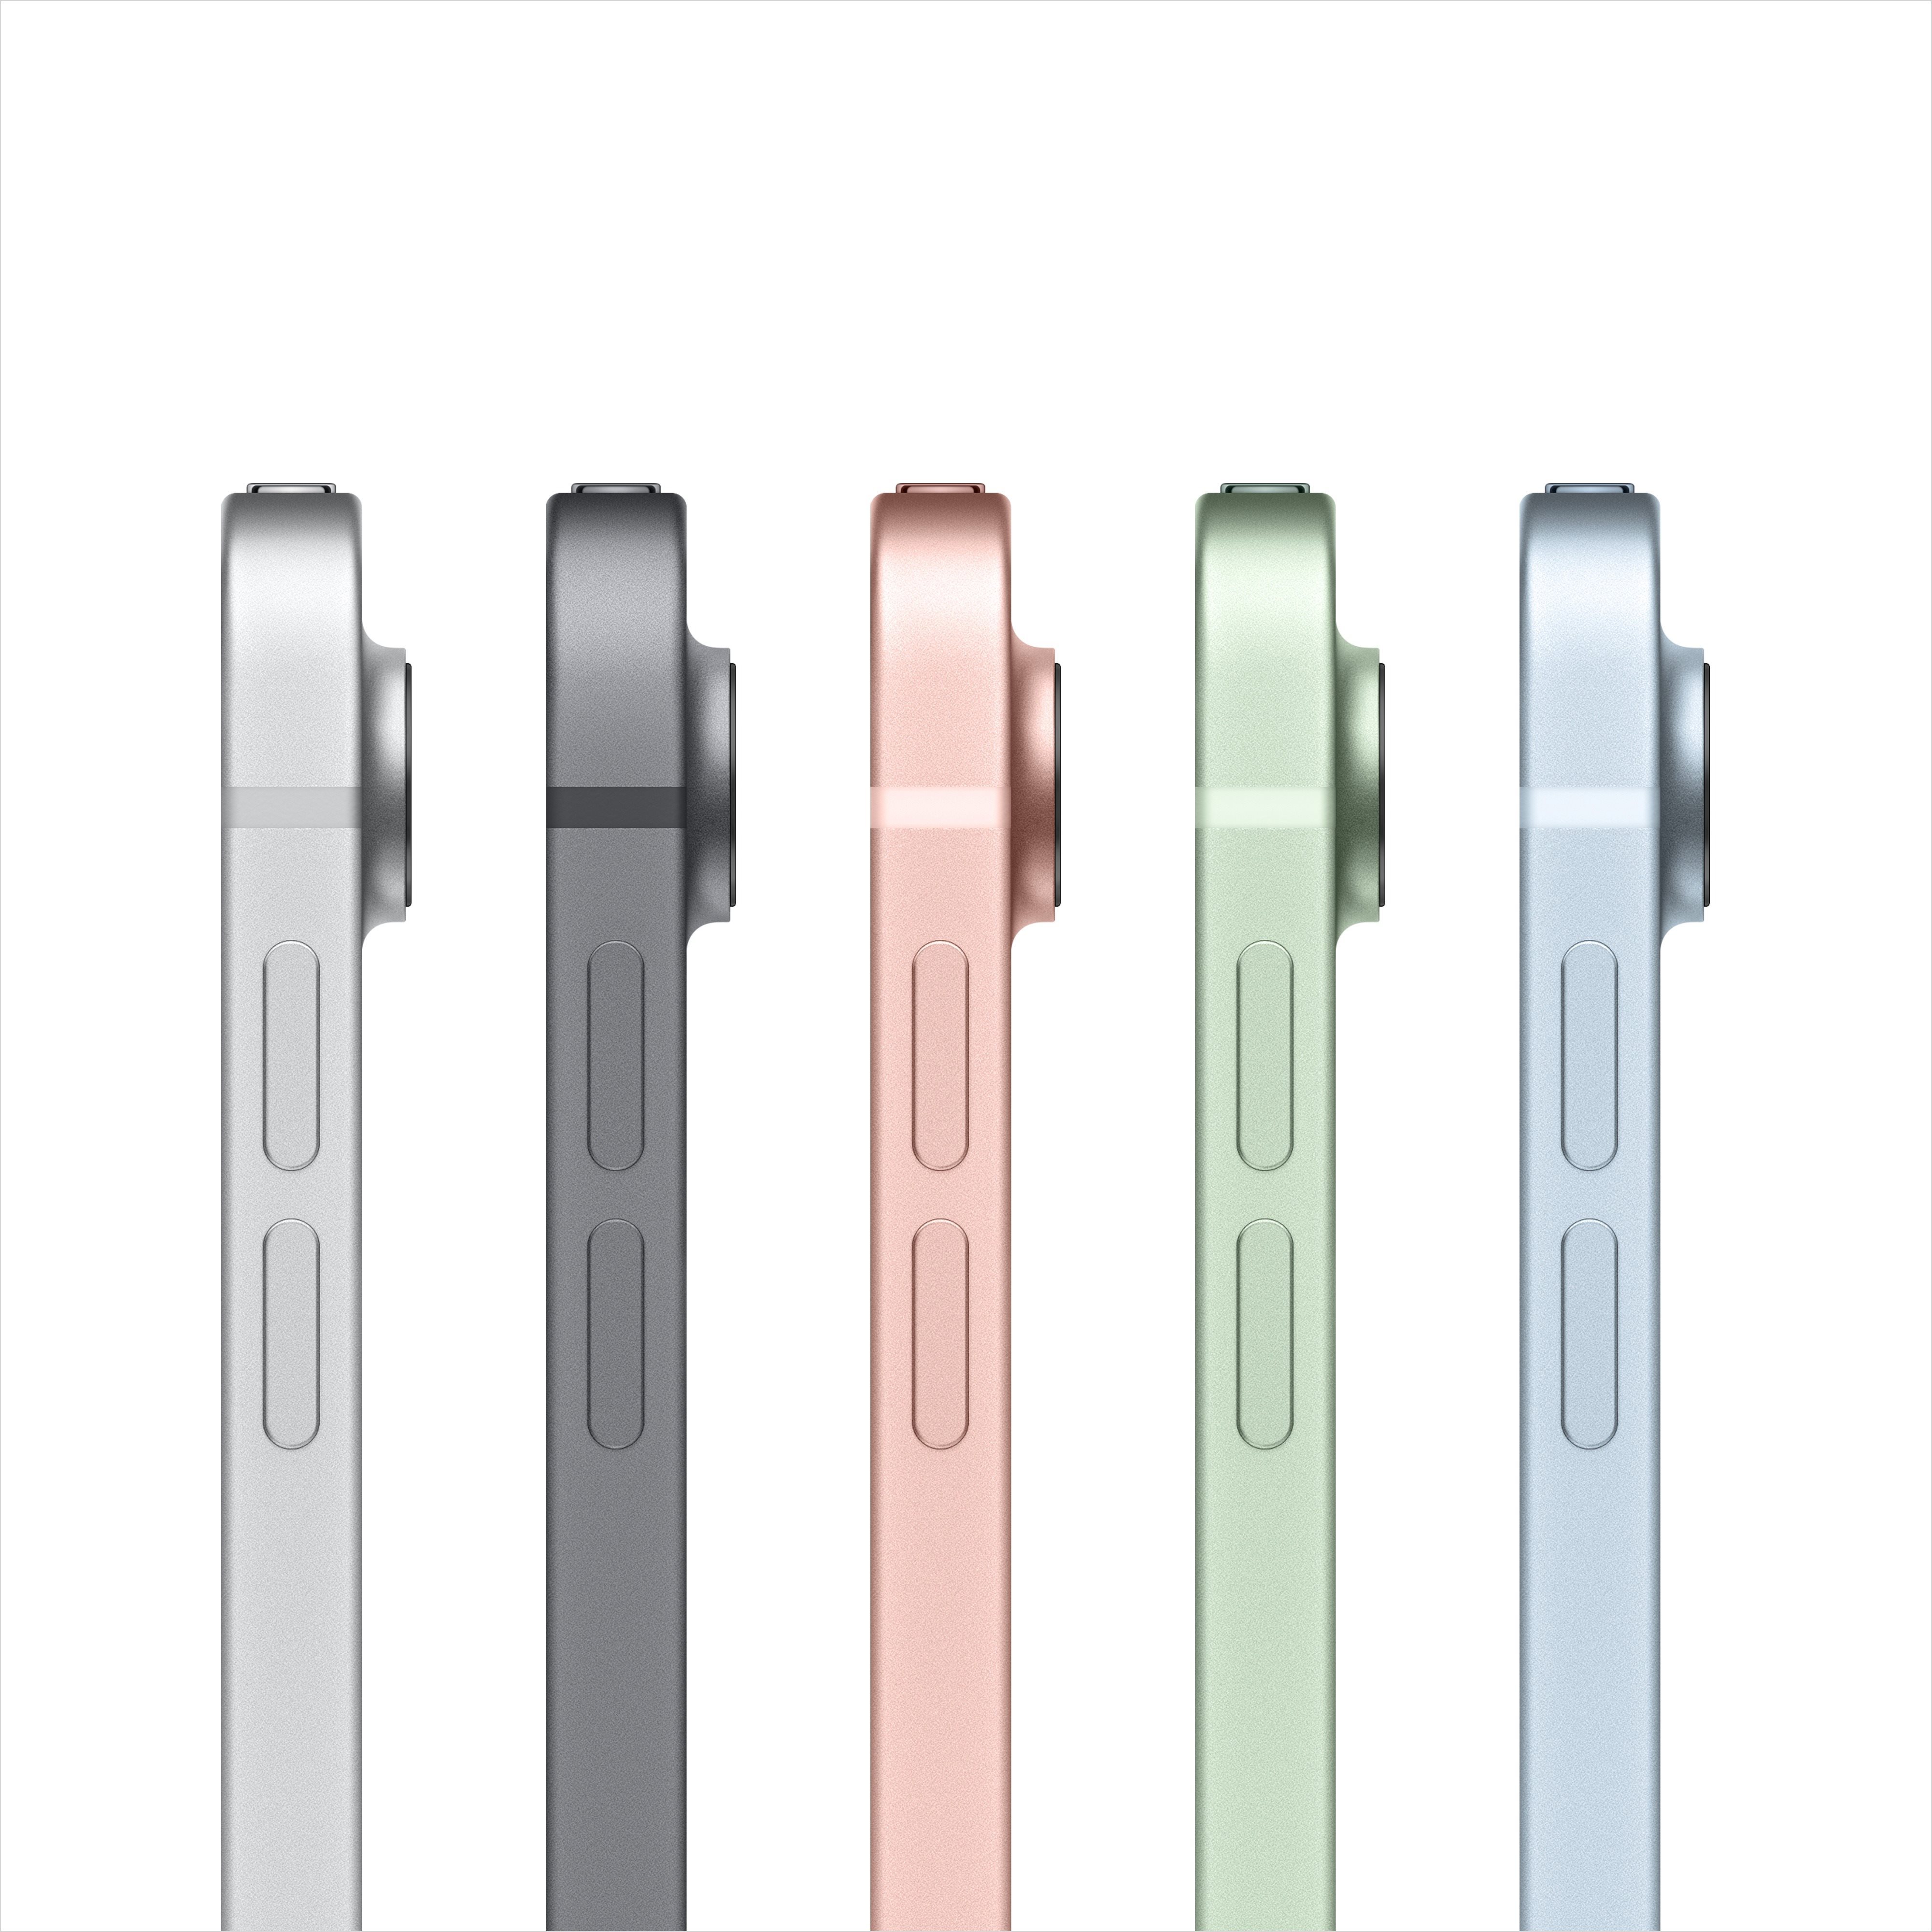 5 farebných prevedení Apple iPad Air (2020)